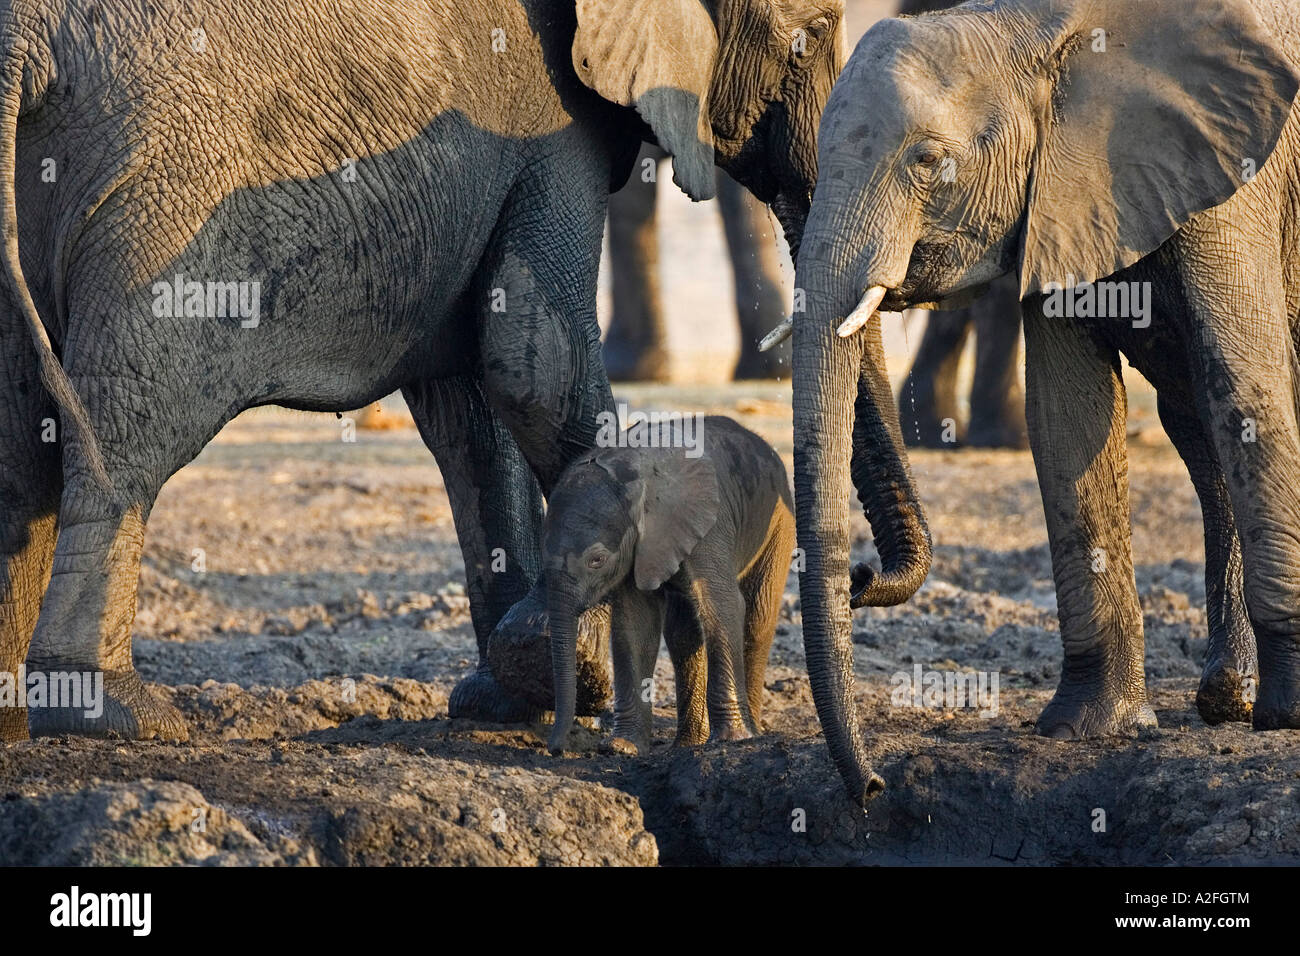 Les éléphants d'Afrique (Loxodonta africana), de la famille. Chobe National Park, Botswana, Africa Banque D'Images